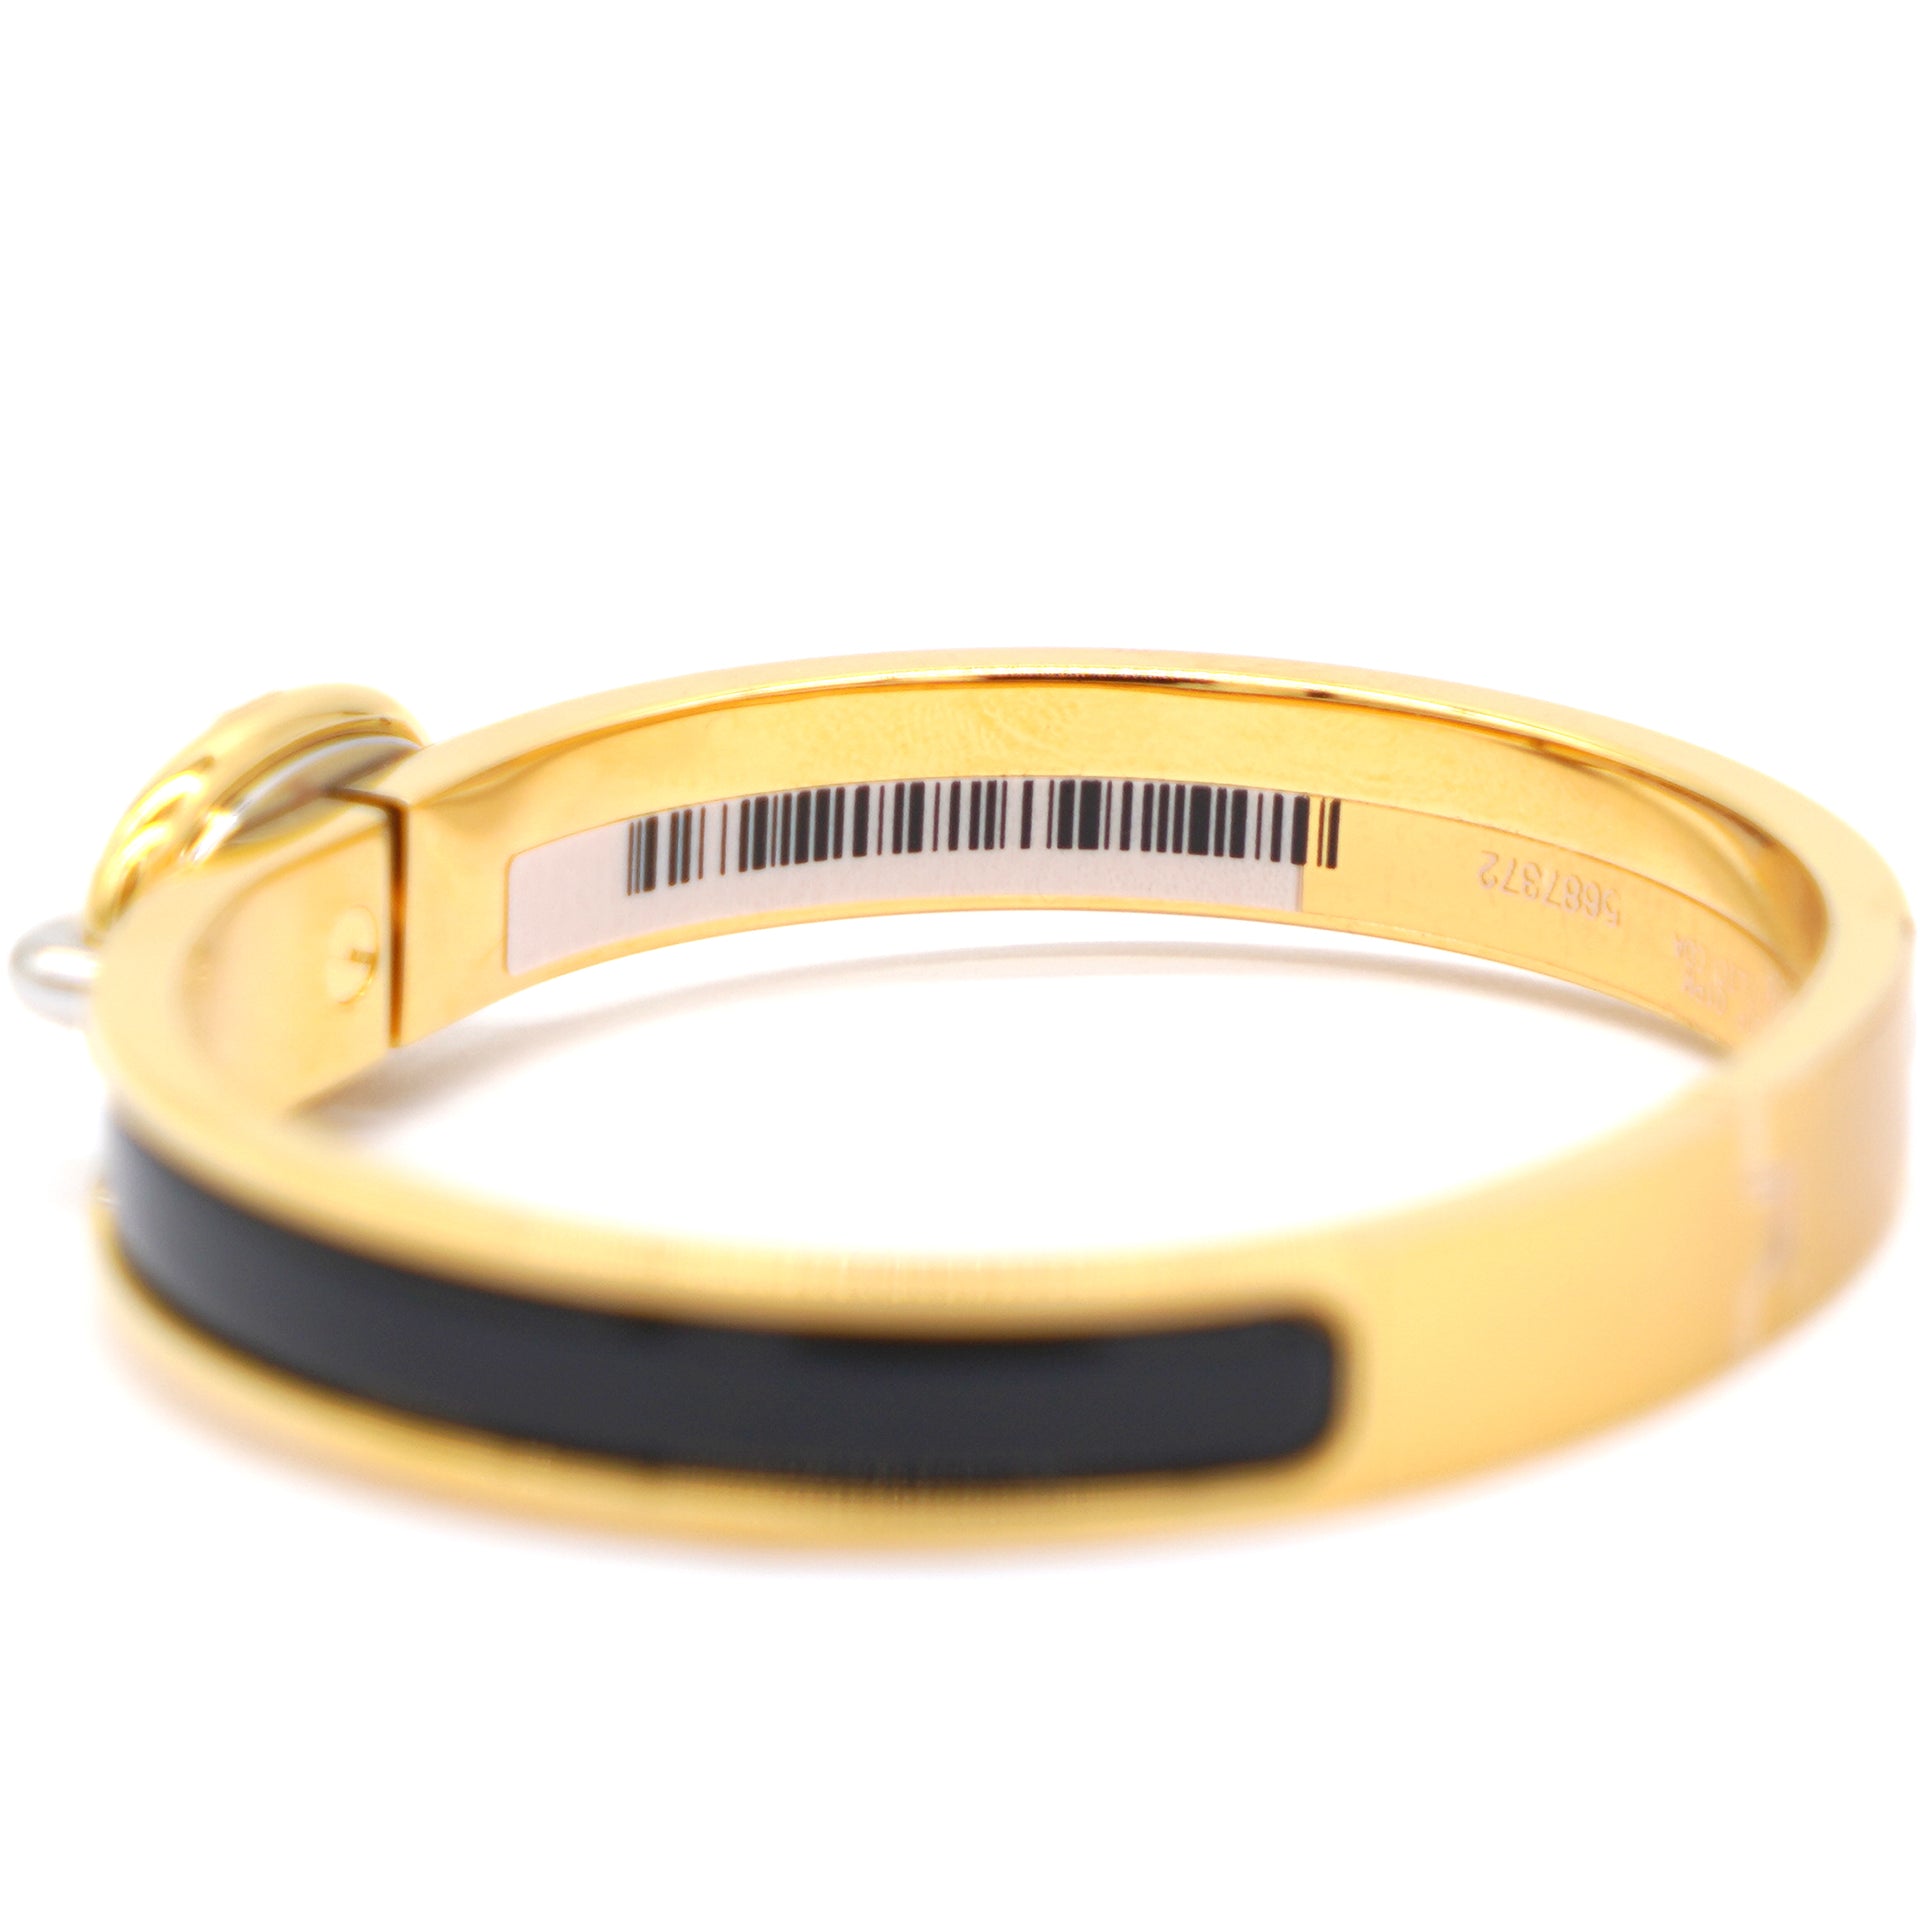 Mini Clic Chaine d'Ancre bracelet